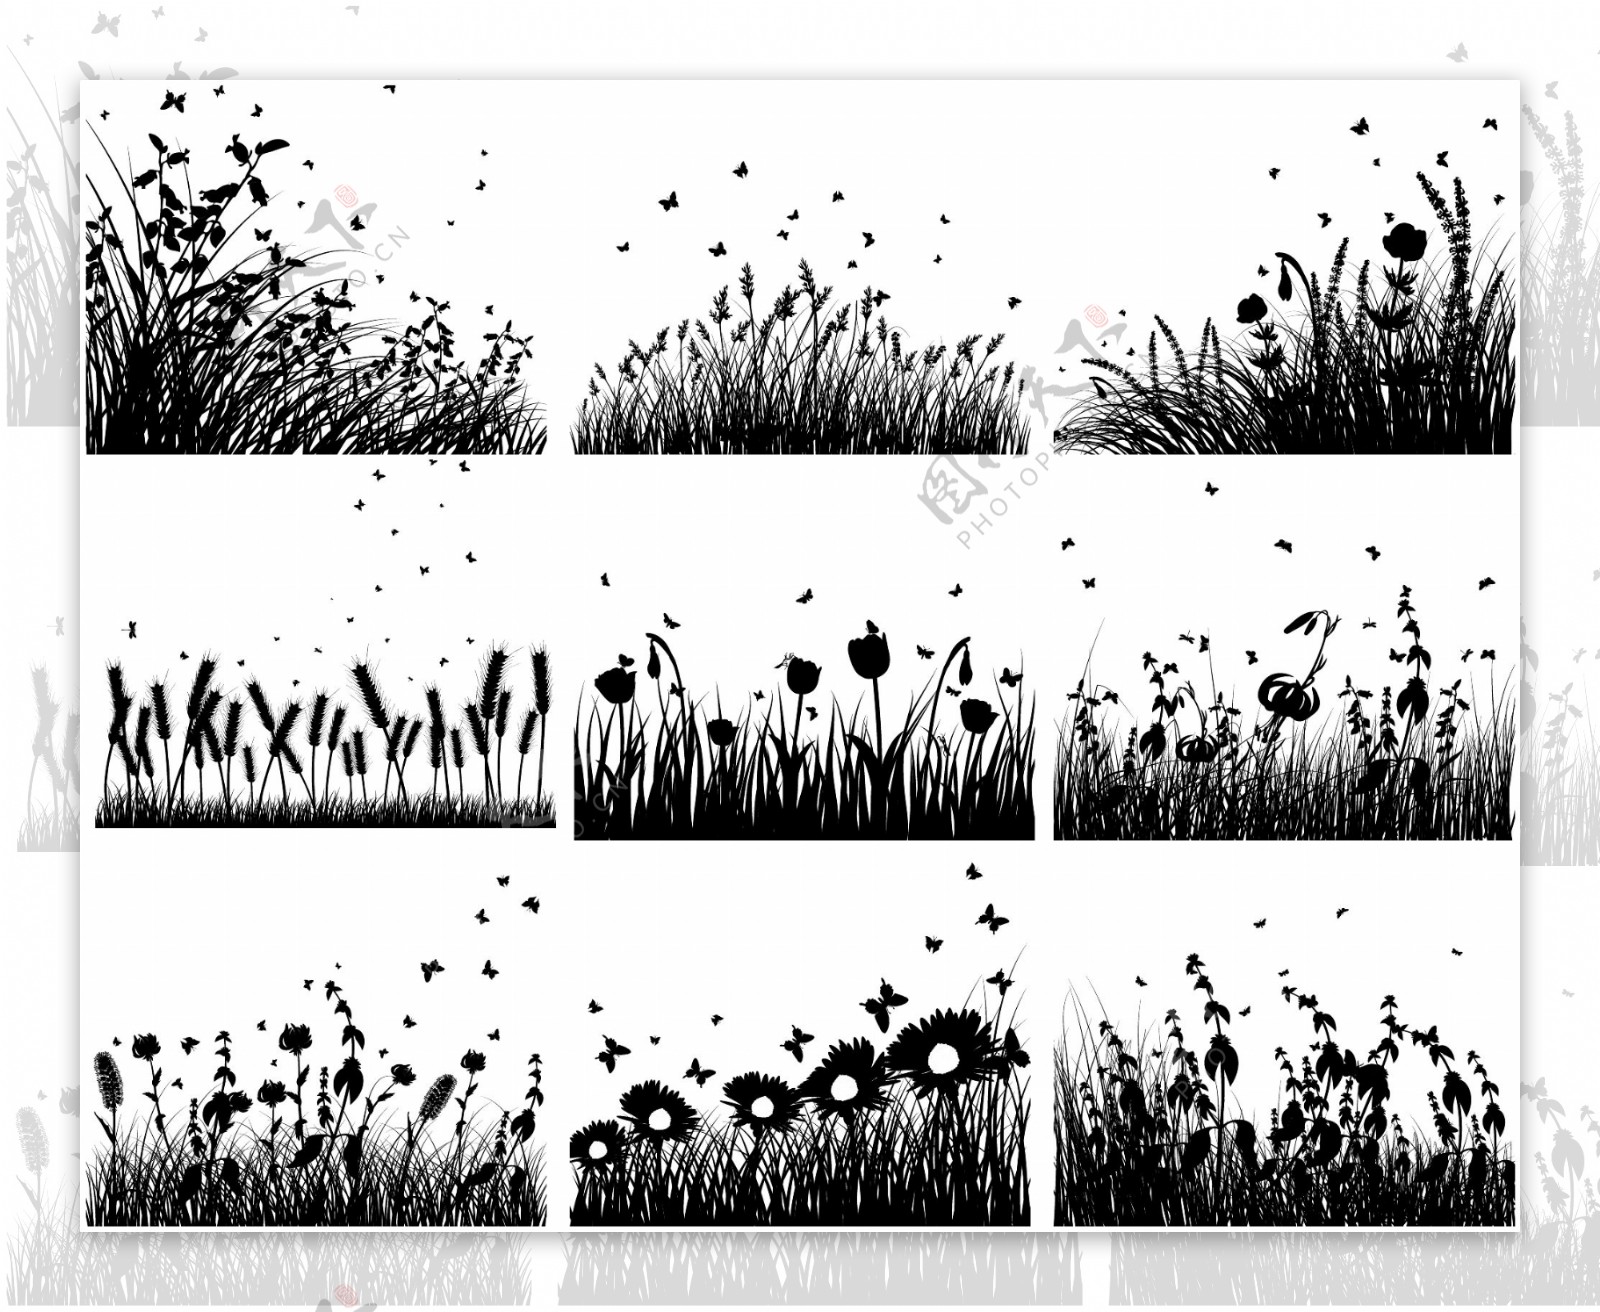 黑白花草矢量素材图片